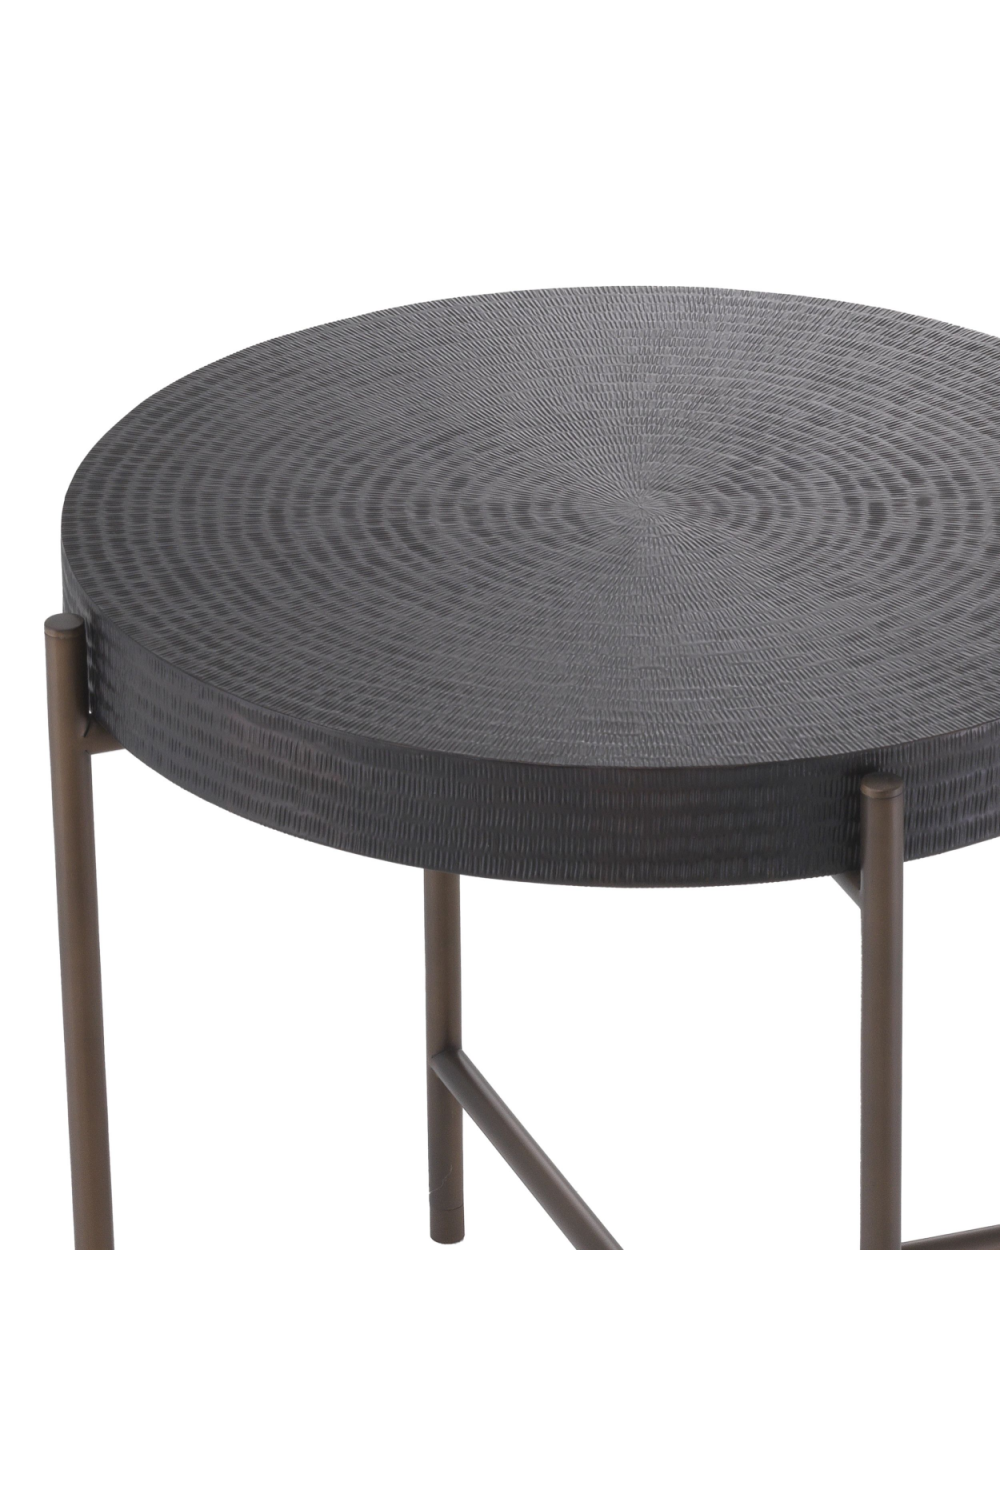 Round Gunmetal Side Table | Eichholtz Nikos | OROA